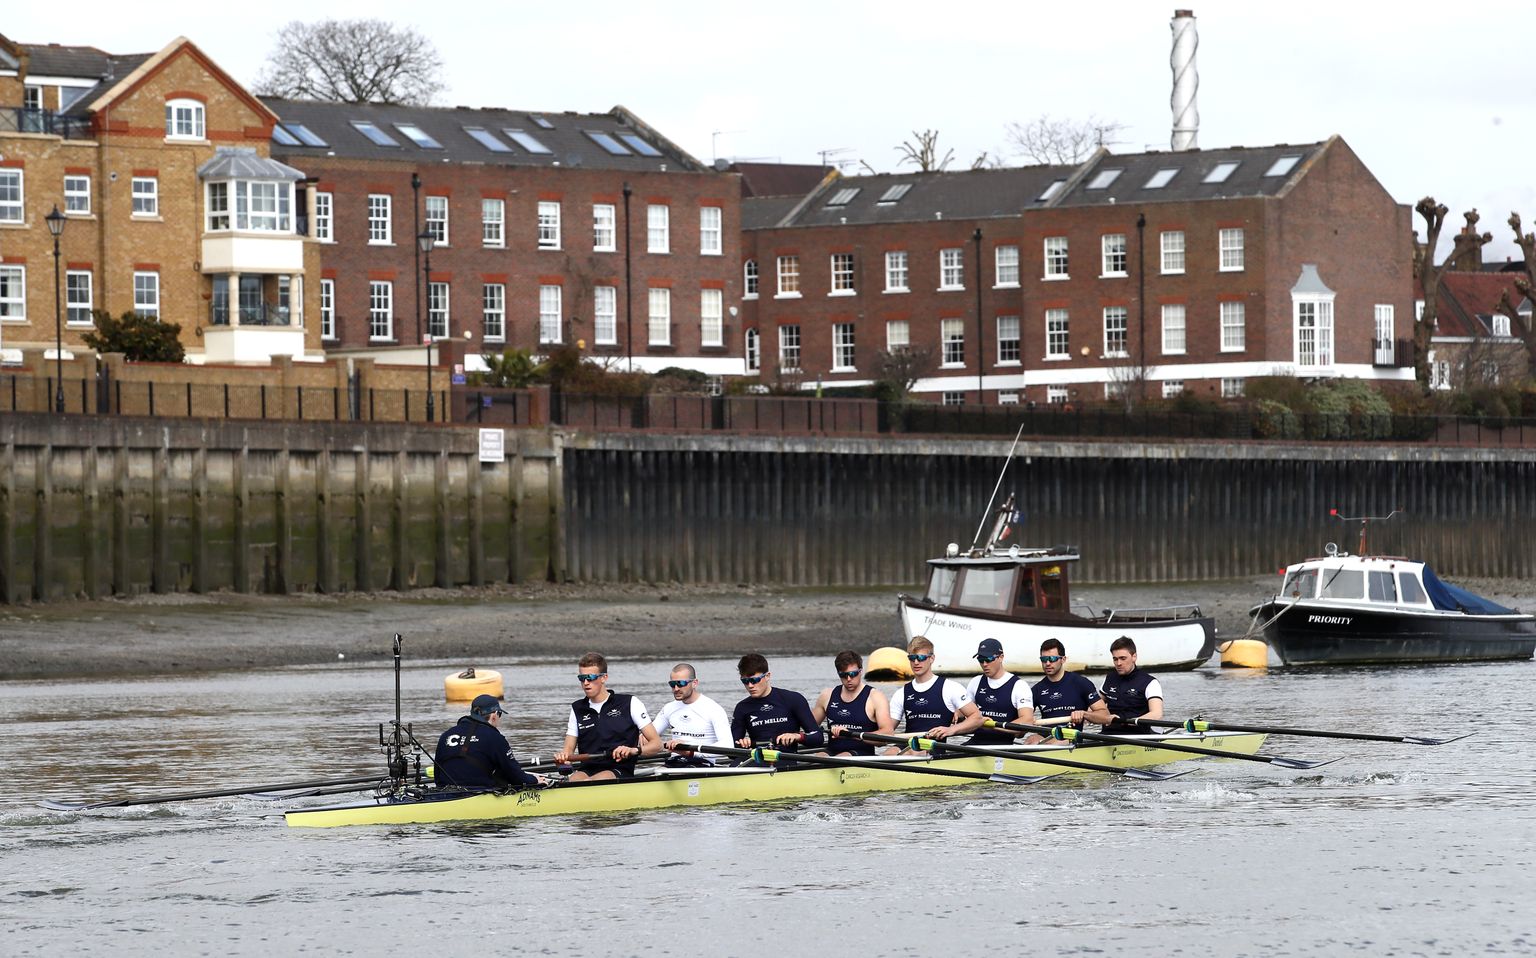 Oxfordi ülikooli meeskond Boat Race'i eel treenimas